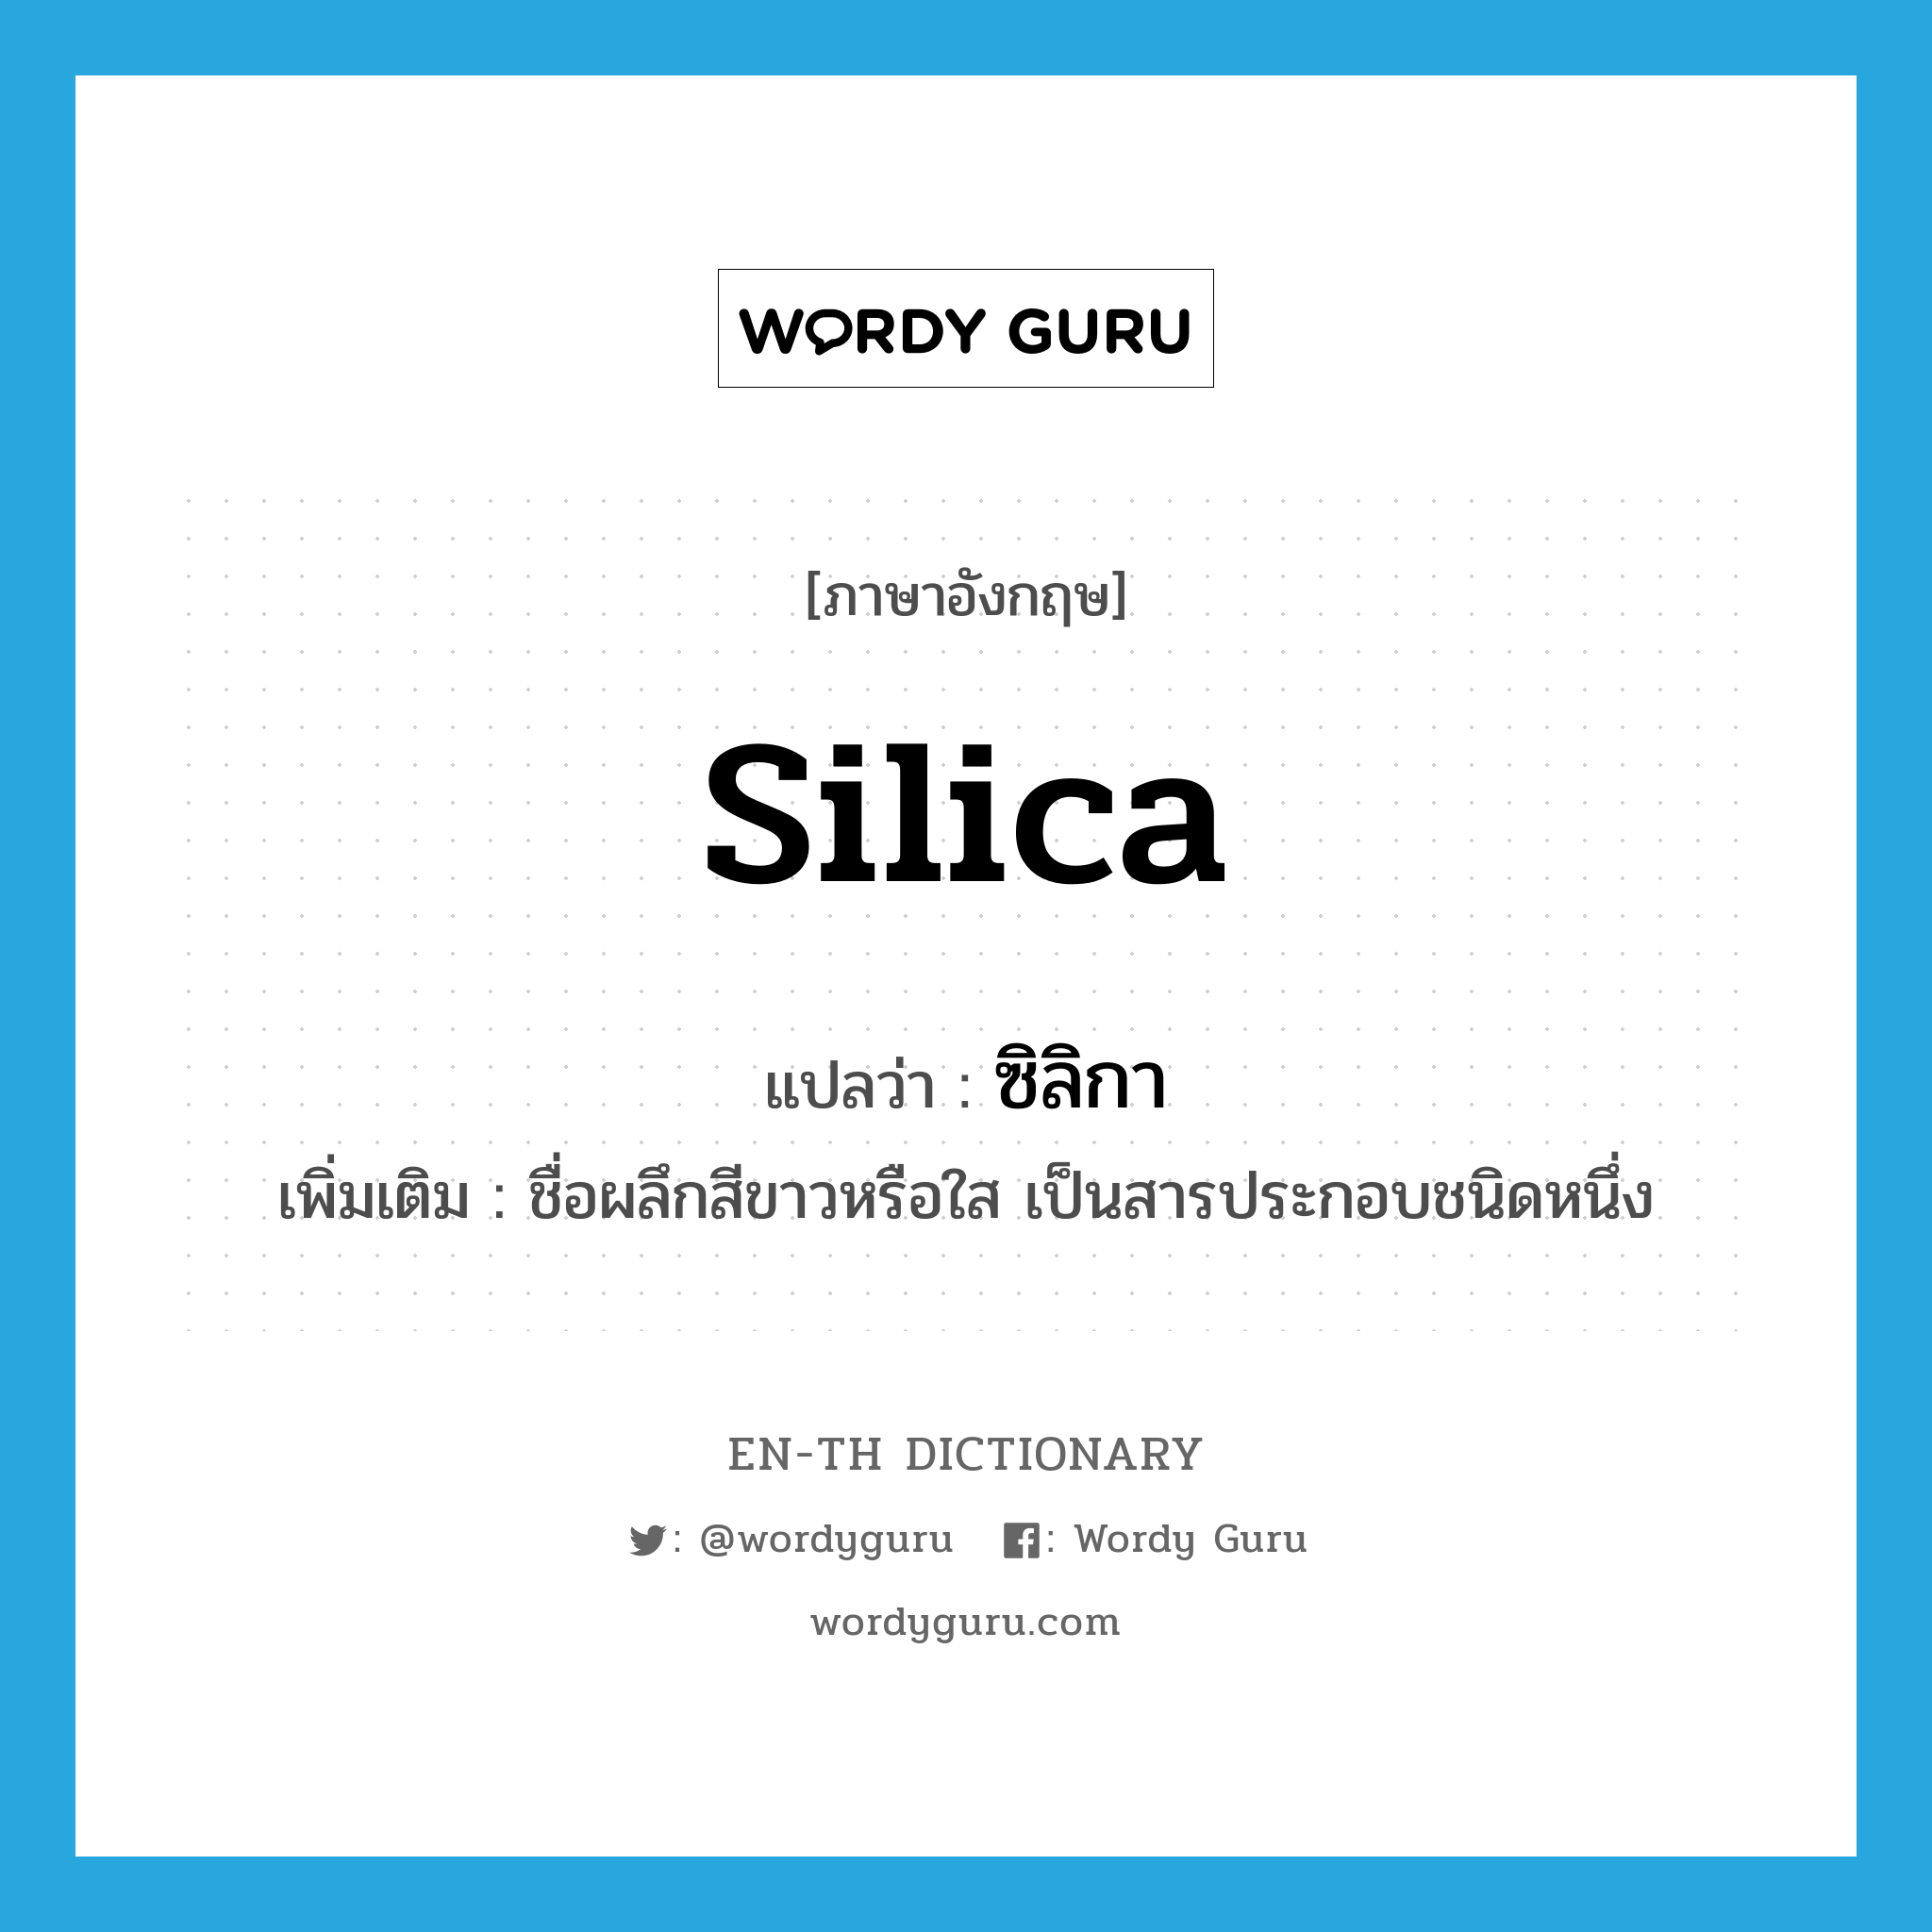 ซิลิกา ภาษาอังกฤษ?, คำศัพท์ภาษาอังกฤษ ซิลิกา แปลว่า silica ประเภท N เพิ่มเติม ชื่อผลึกสีขาวหรือใส เป็นสารประกอบชนิดหนึ่ง หมวด N